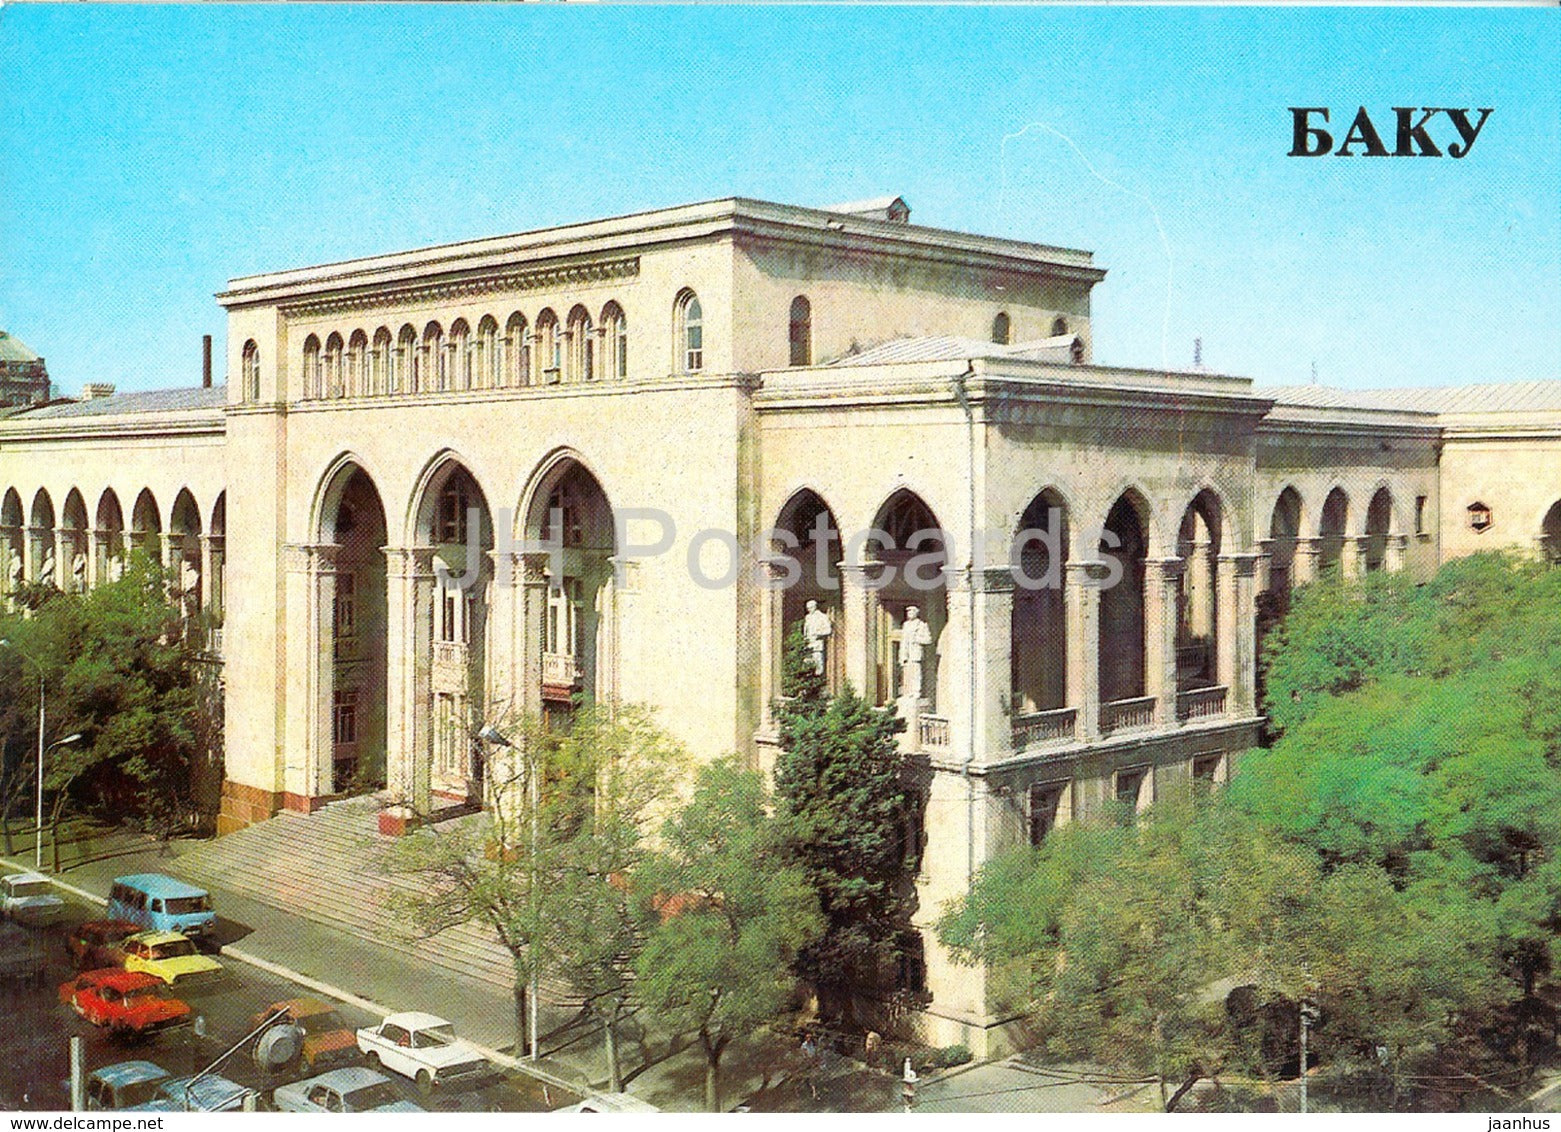 Baku - Akhundov Library - 1985 - Azerbaijan USSR - unused